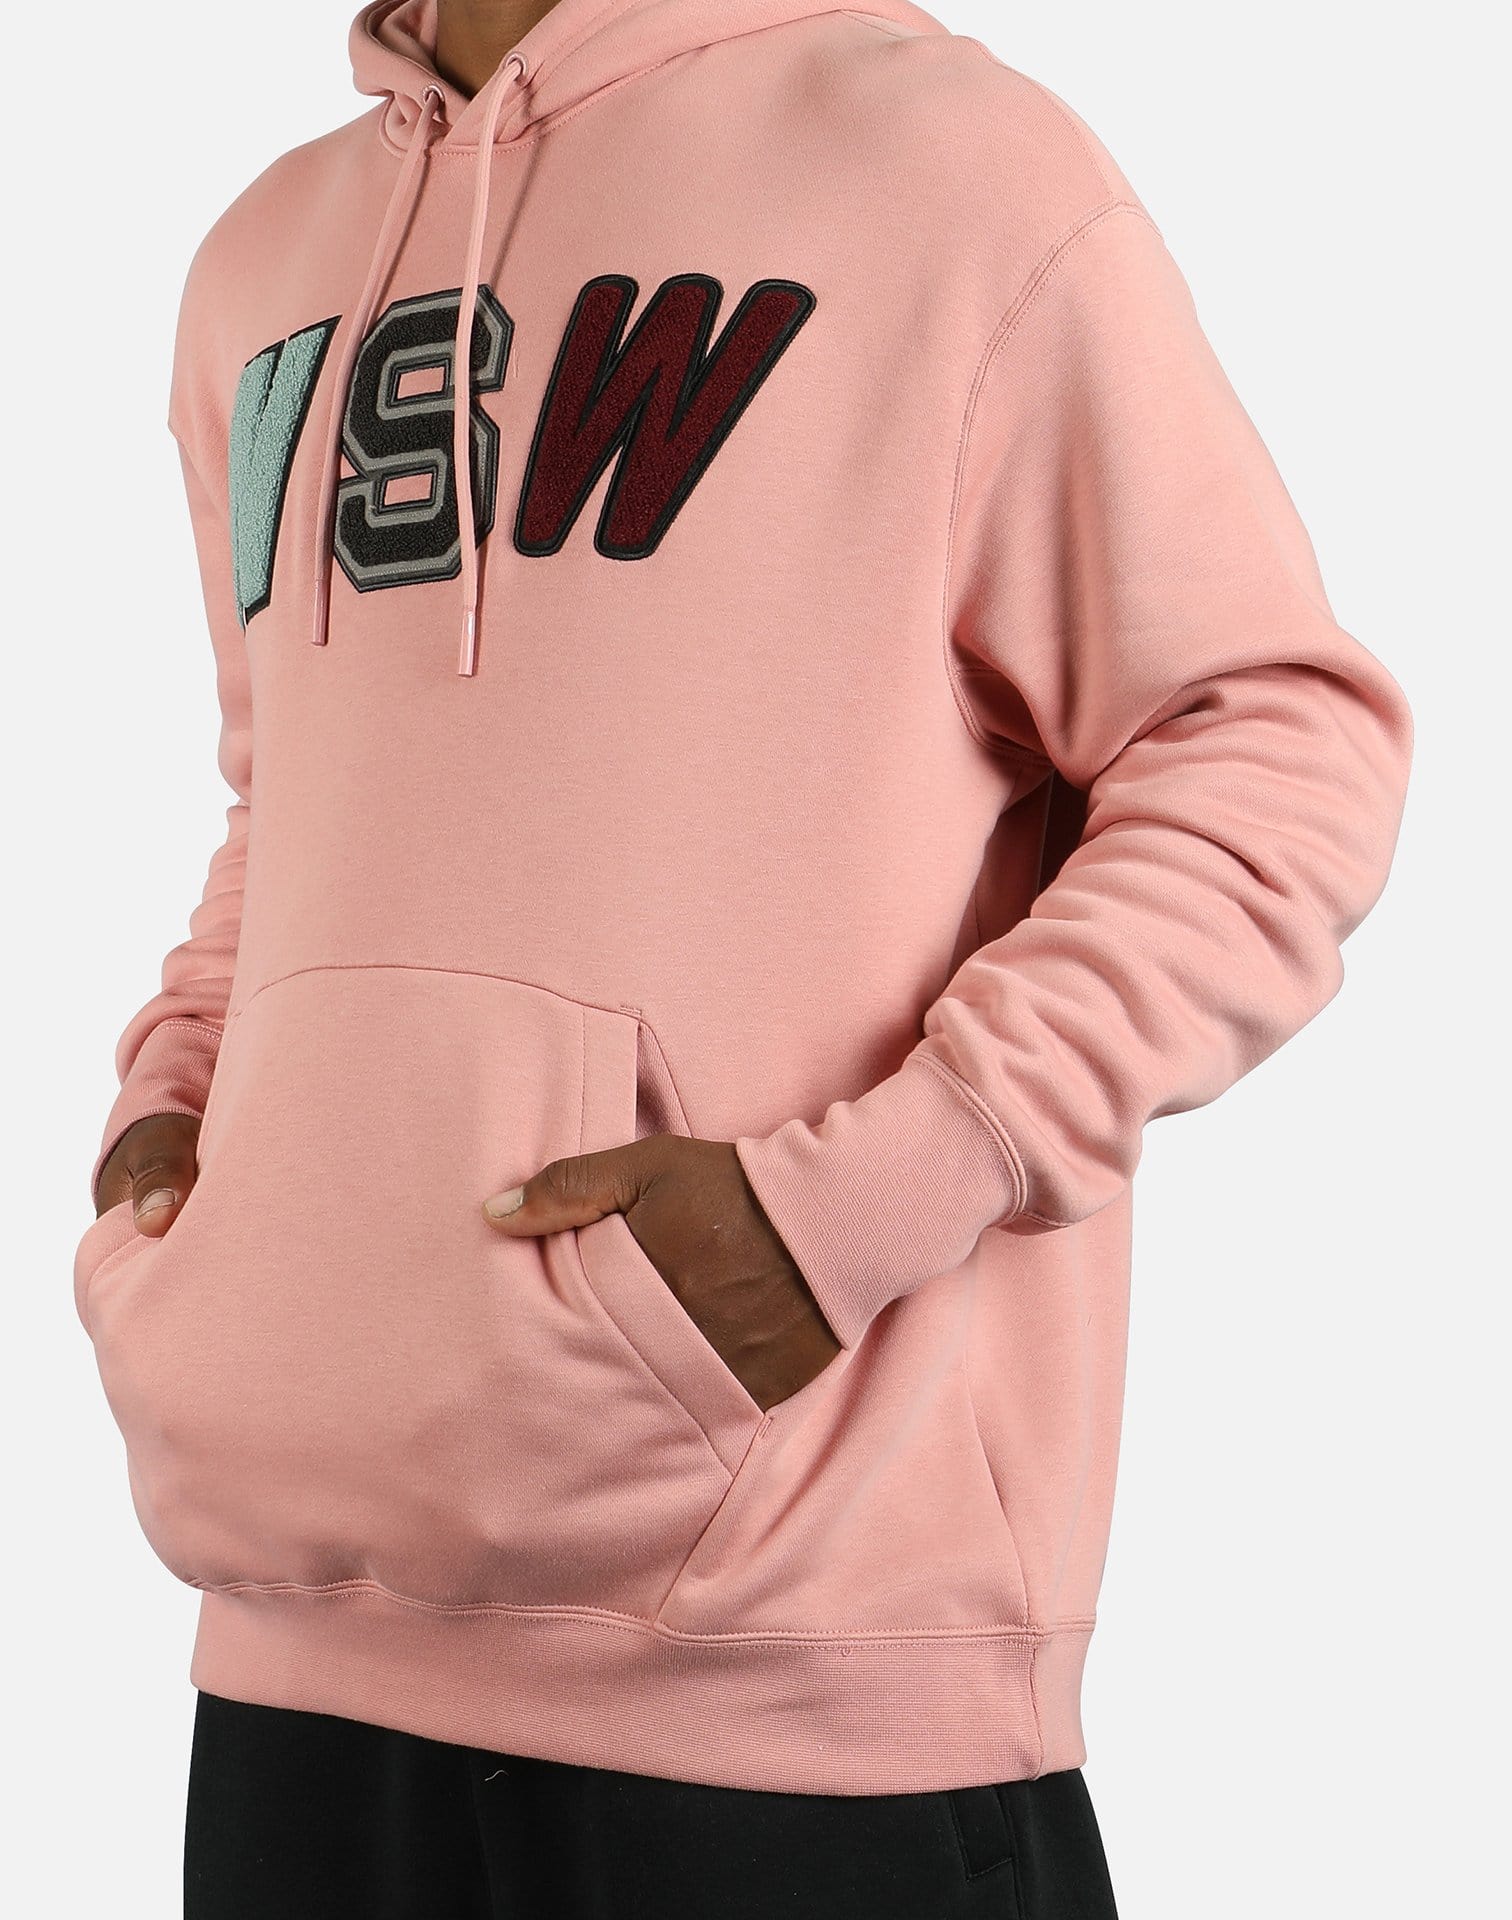 nike nsw hoodie pink